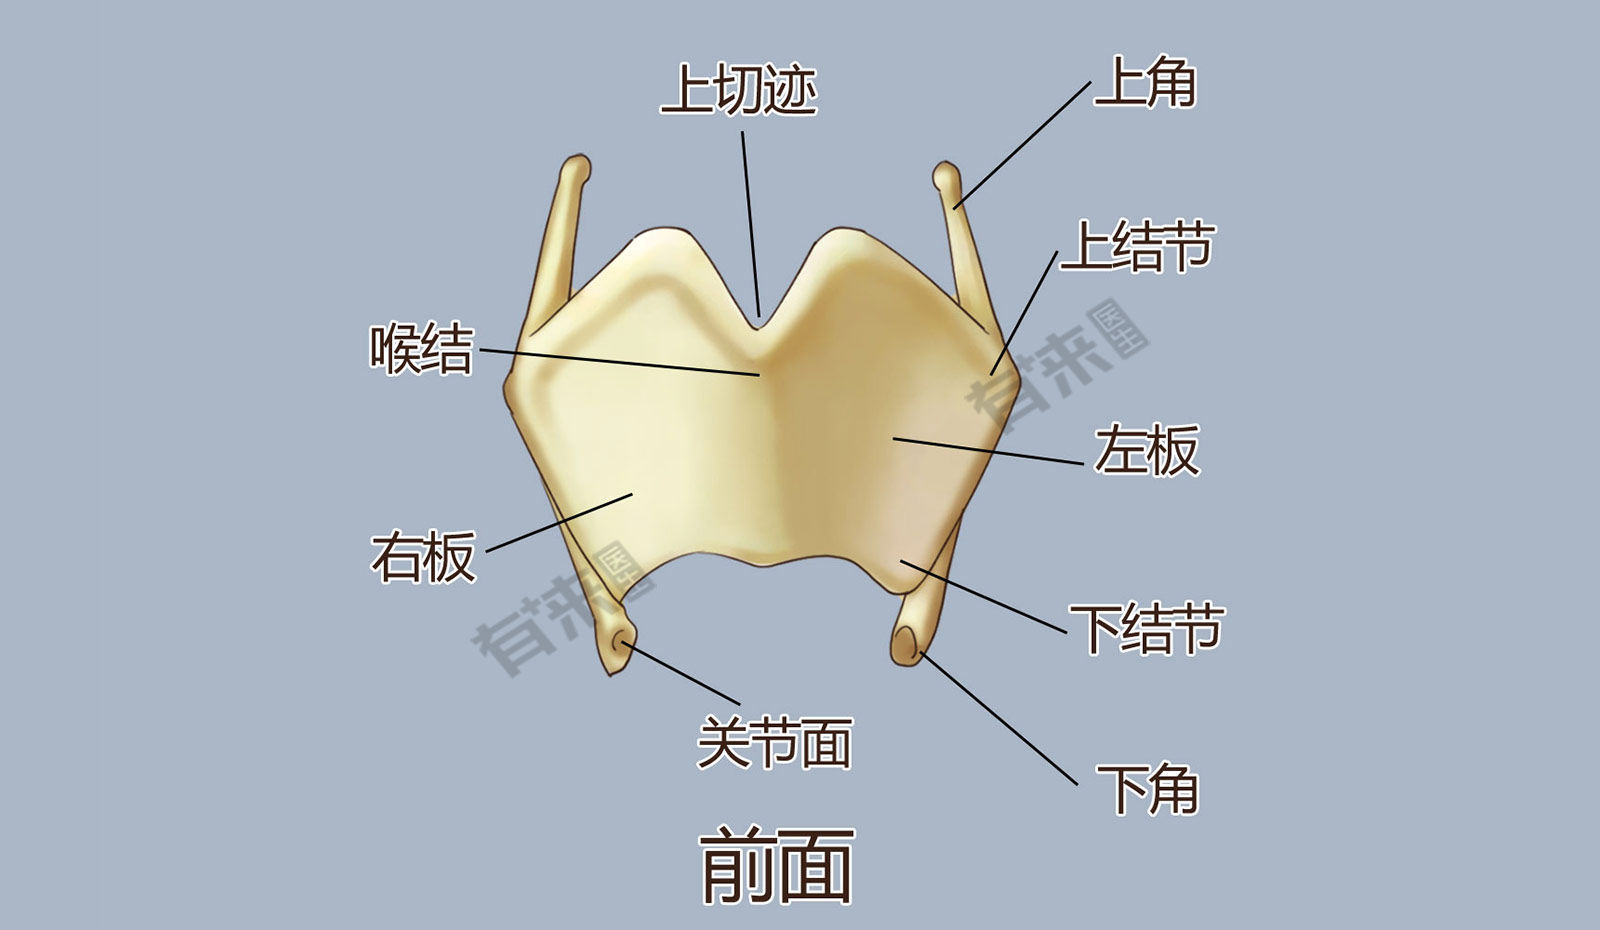 甲状软骨位于人体颈部,内侧观位于舌骨与环状软骨之间,构成喉的前壁和